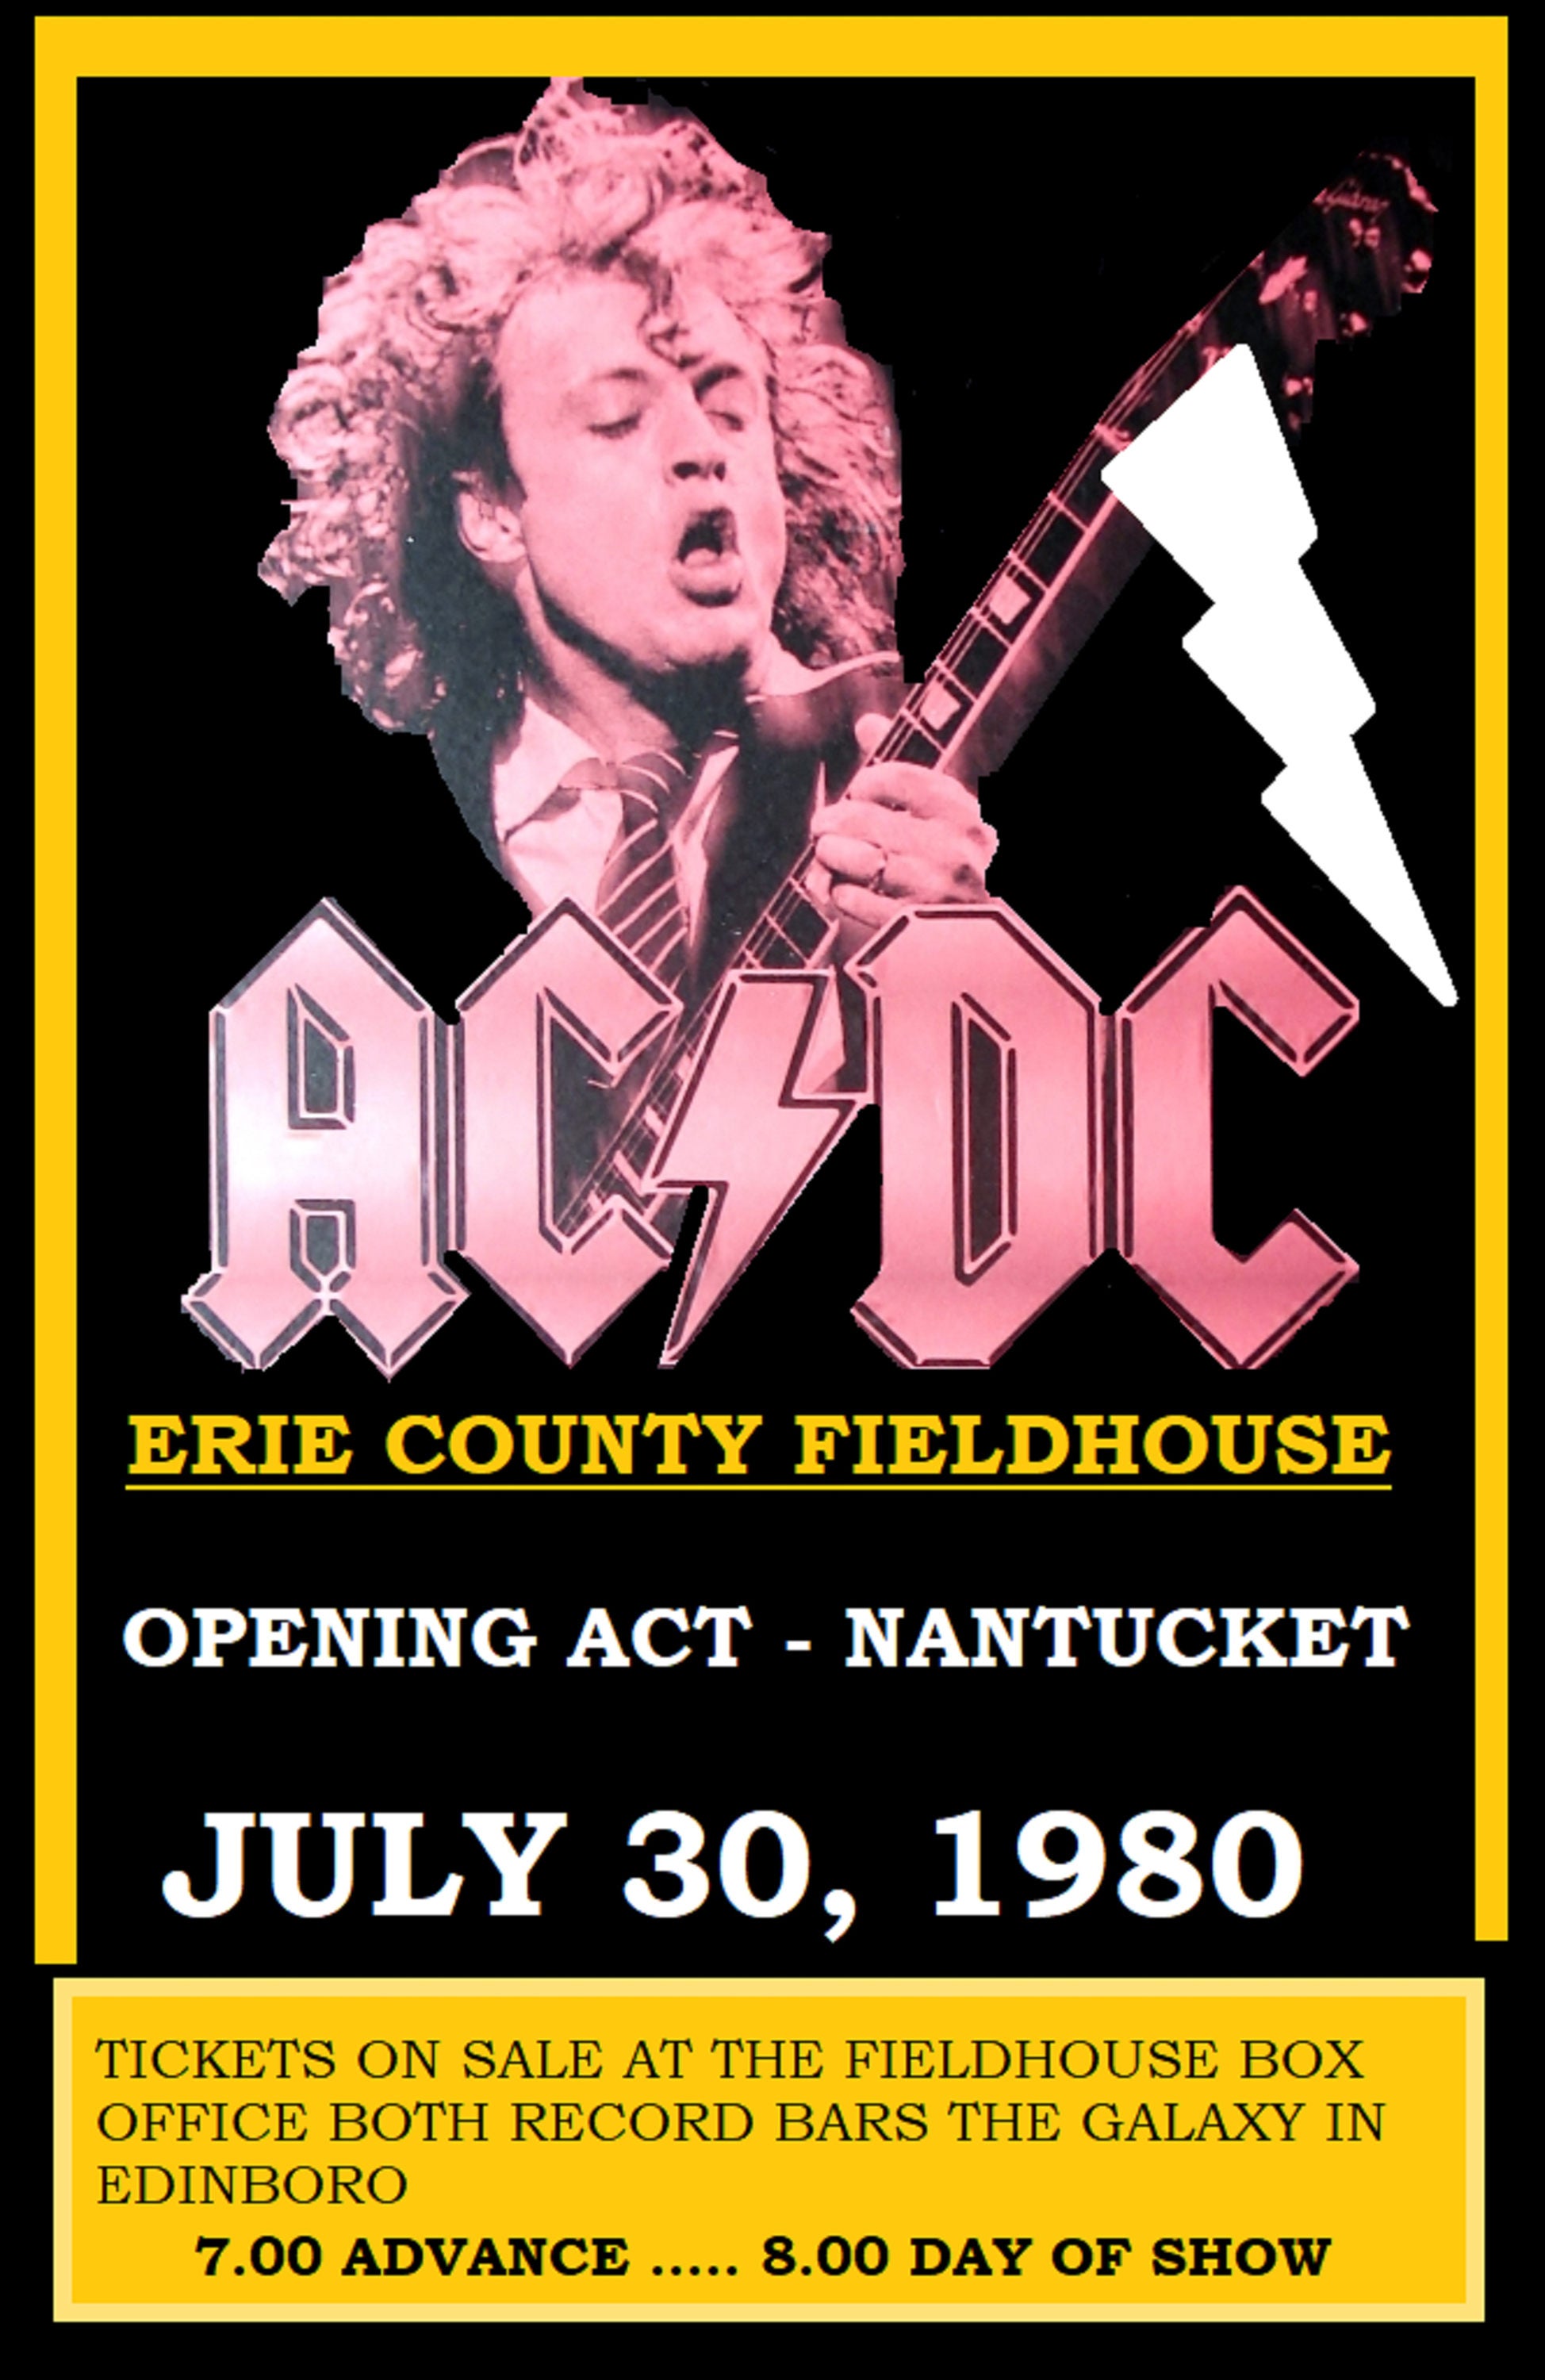 ac dc tour dates 1980